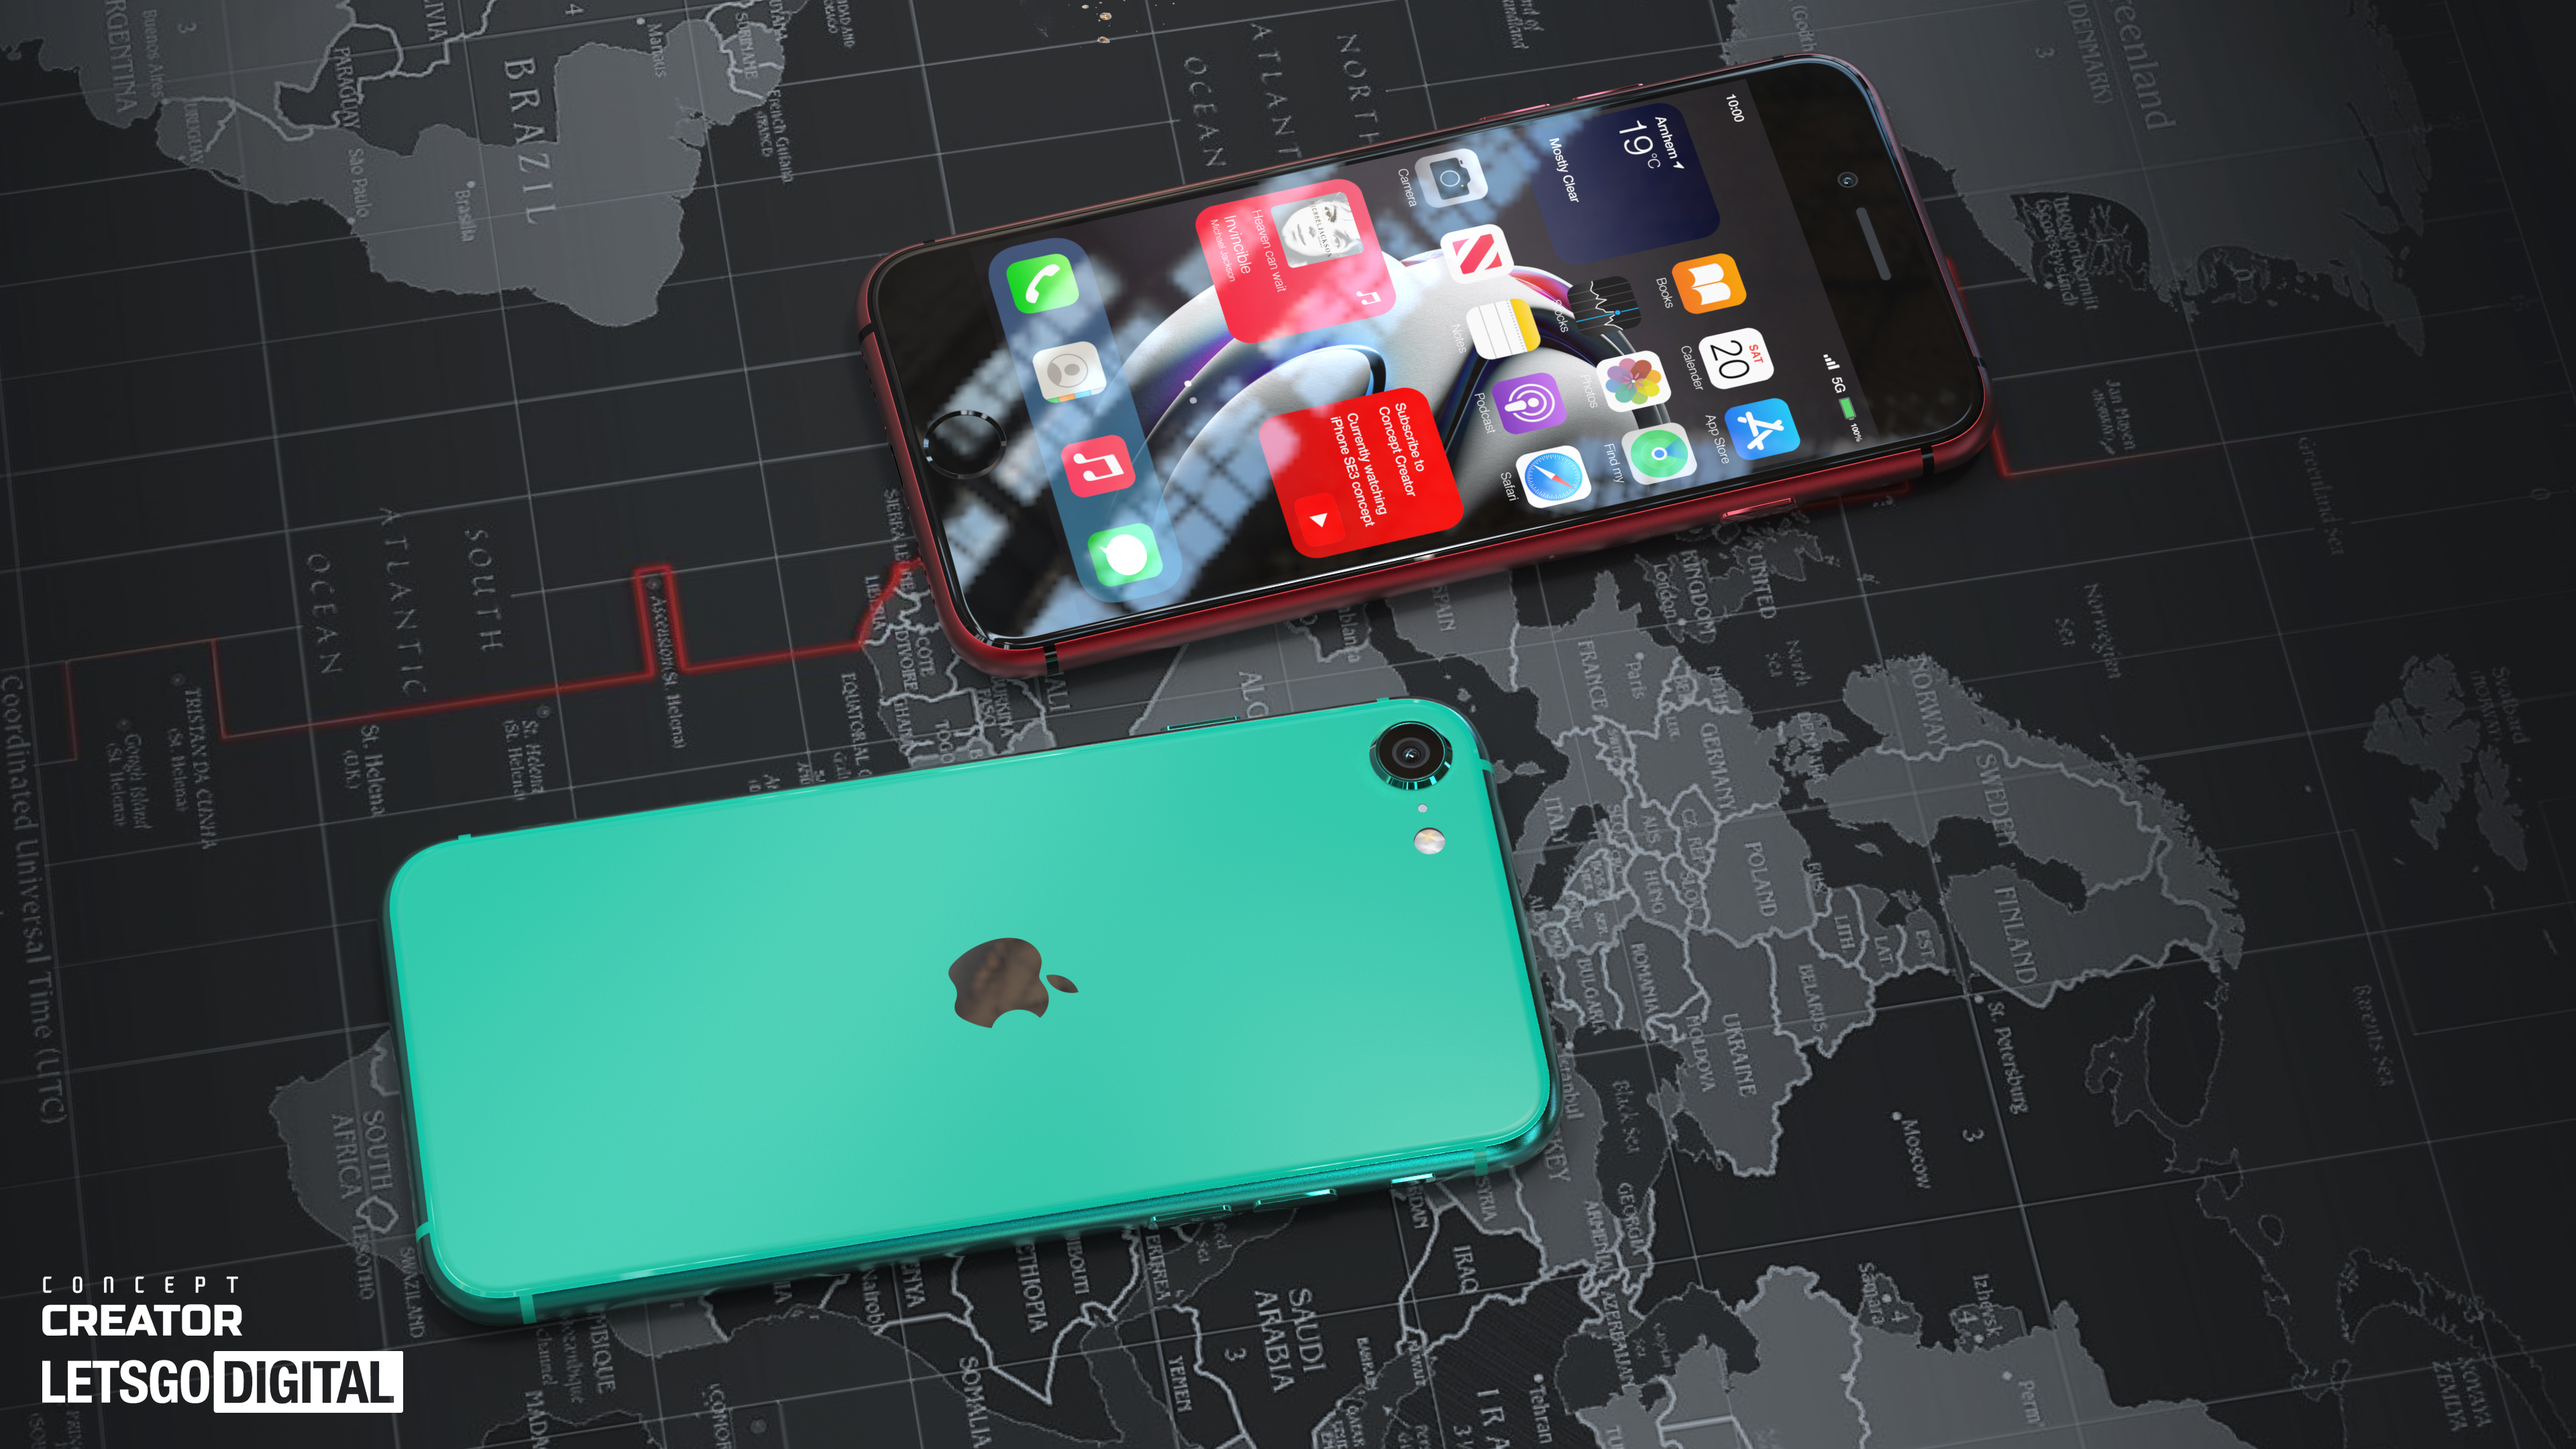 El nuevo iPhone SE mostrado en las representaciones: el teléfono inteligente Apple más barato con soporte 5G